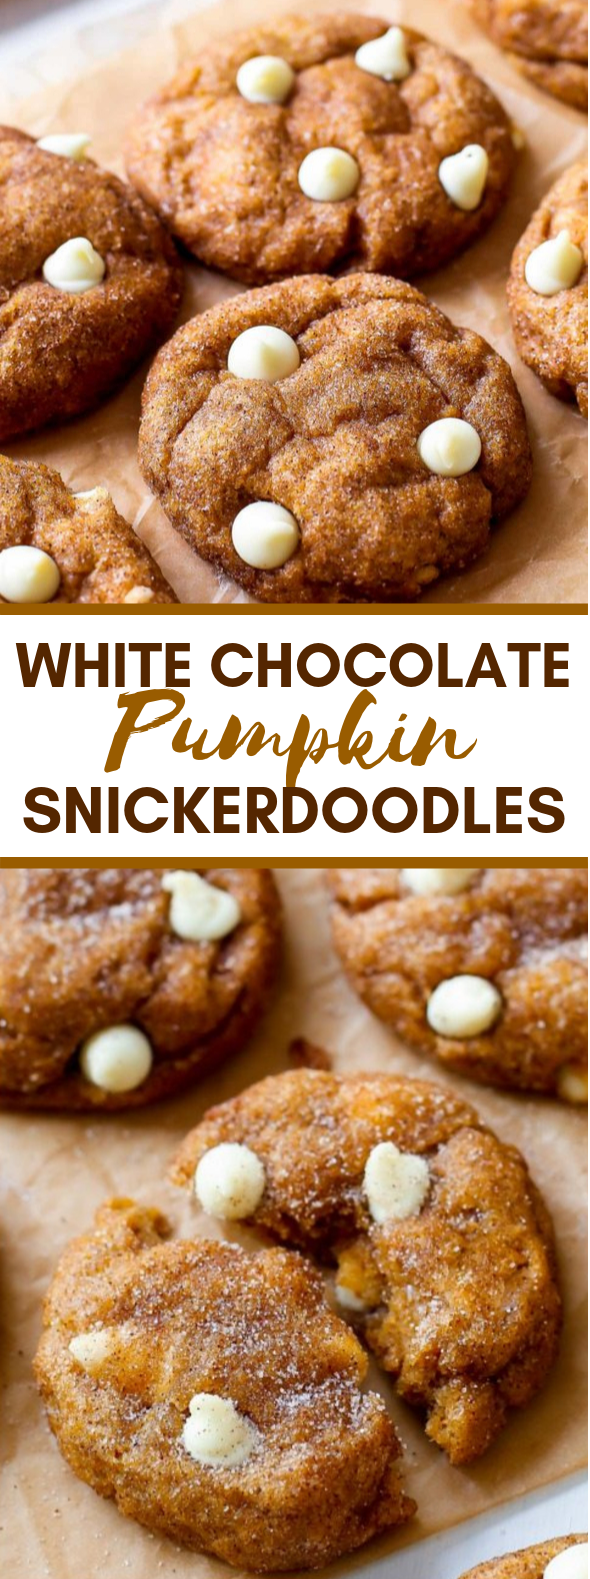 White Chocolate Pumpkin Snickerdoodles #desserts #cookies